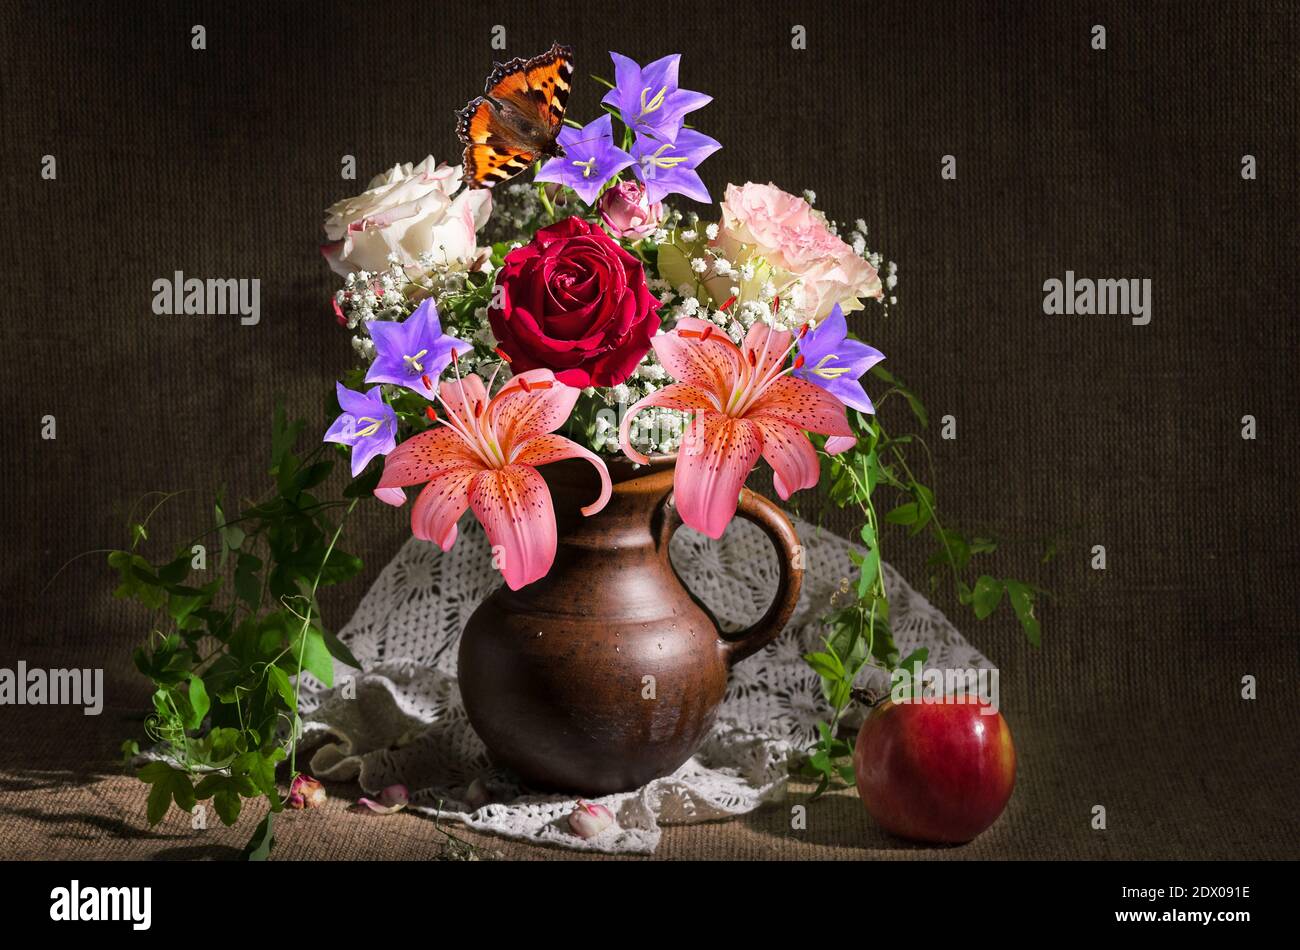 Stillleben mit einem Blumenstrauß in einem Krug und einem Apfel auf einem Hintergrund von Sackleinen. Selektiver Fokus Stockfoto